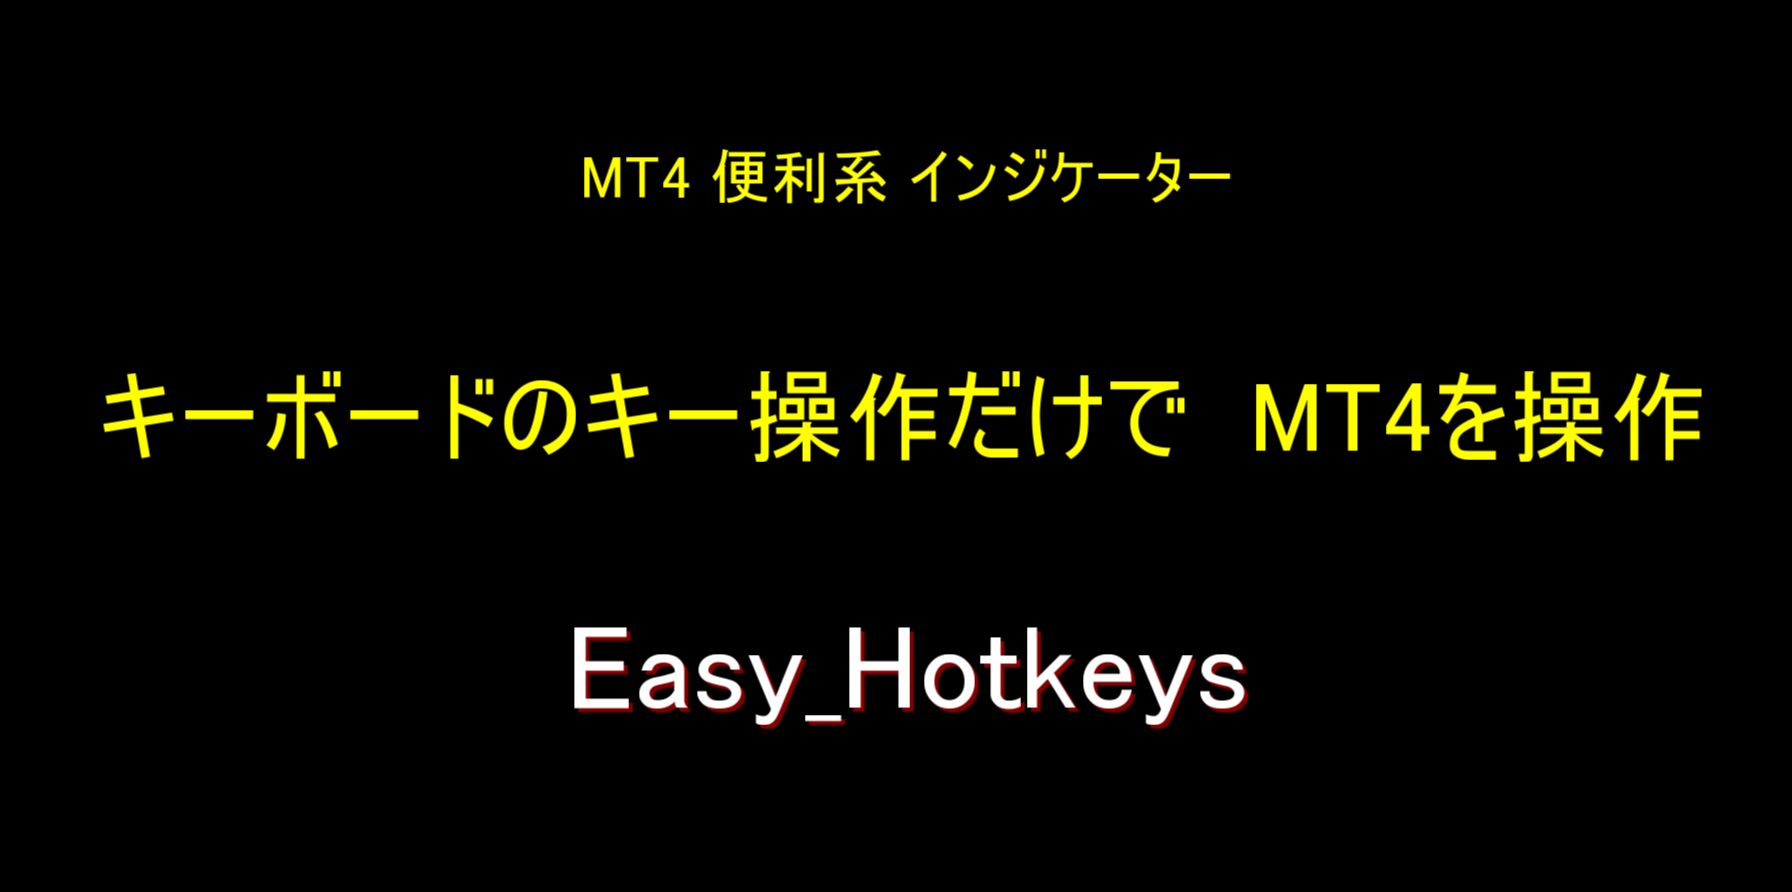 キーボードの1KeyだけでMT4を操作可能にする「Easy_Hotkeys」